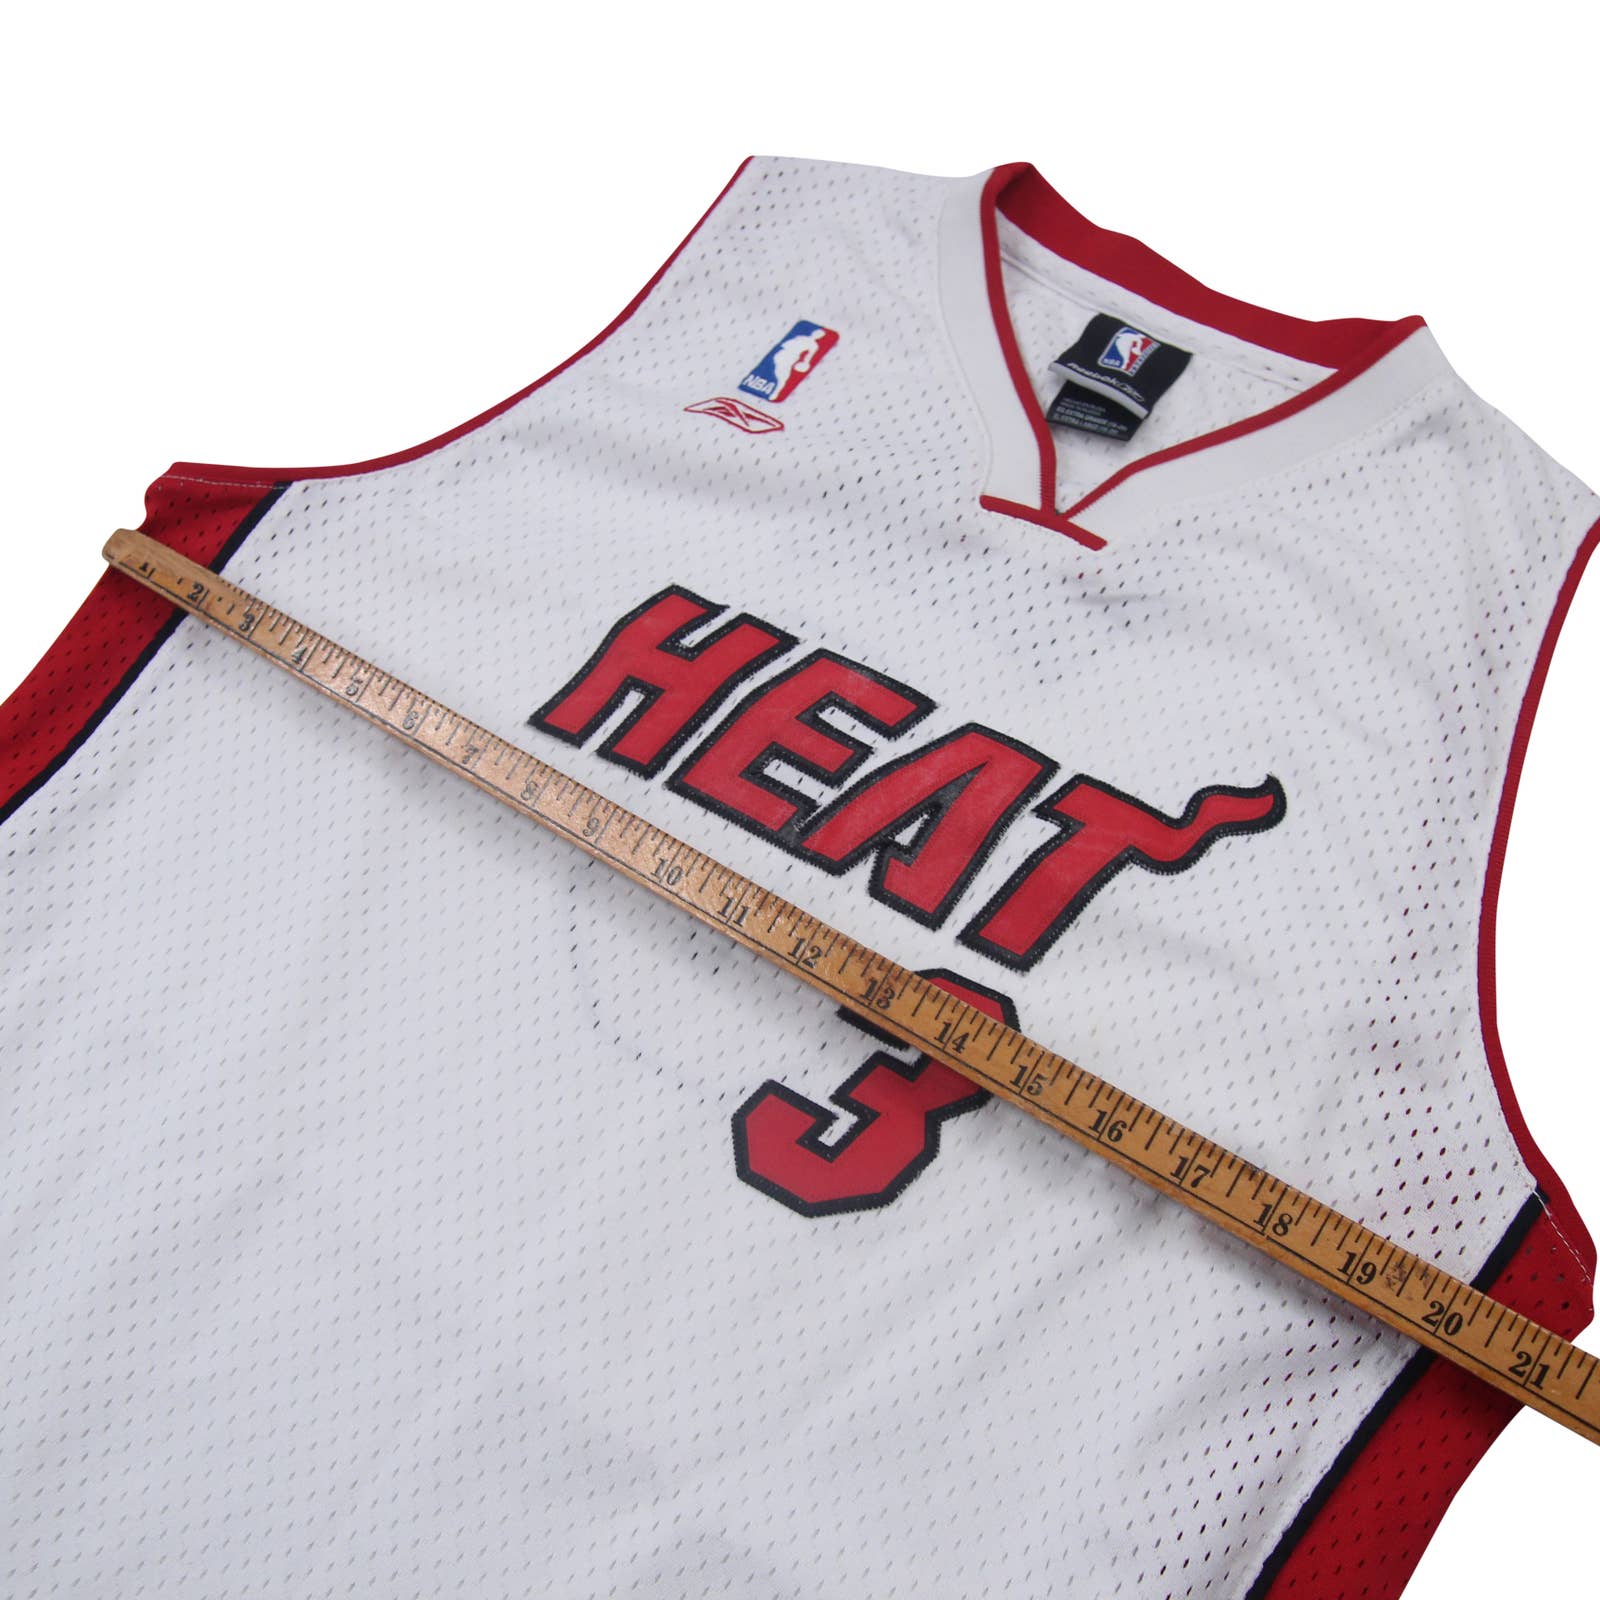 Reebok, Shirts, Reebok Hwc Miami Heat South Beach Dwayne Wade Alt Jersey  Size 3xl Mens